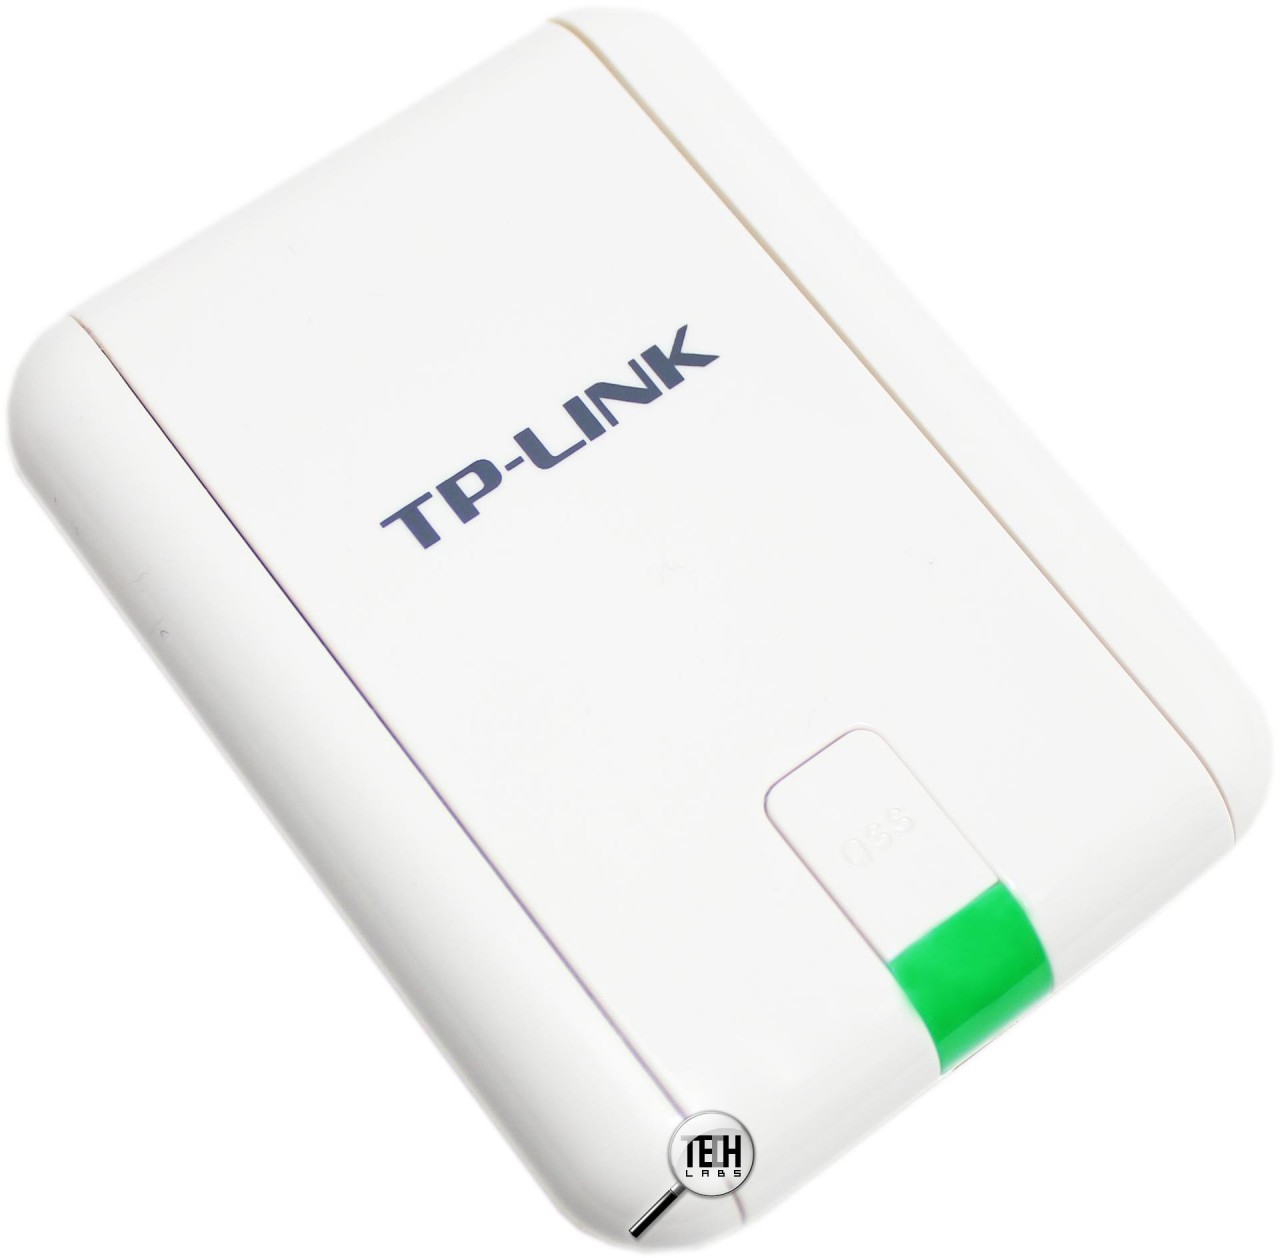 TL-WN822N, Adaptateur USB WiFi à gain élevé 300 Mbps